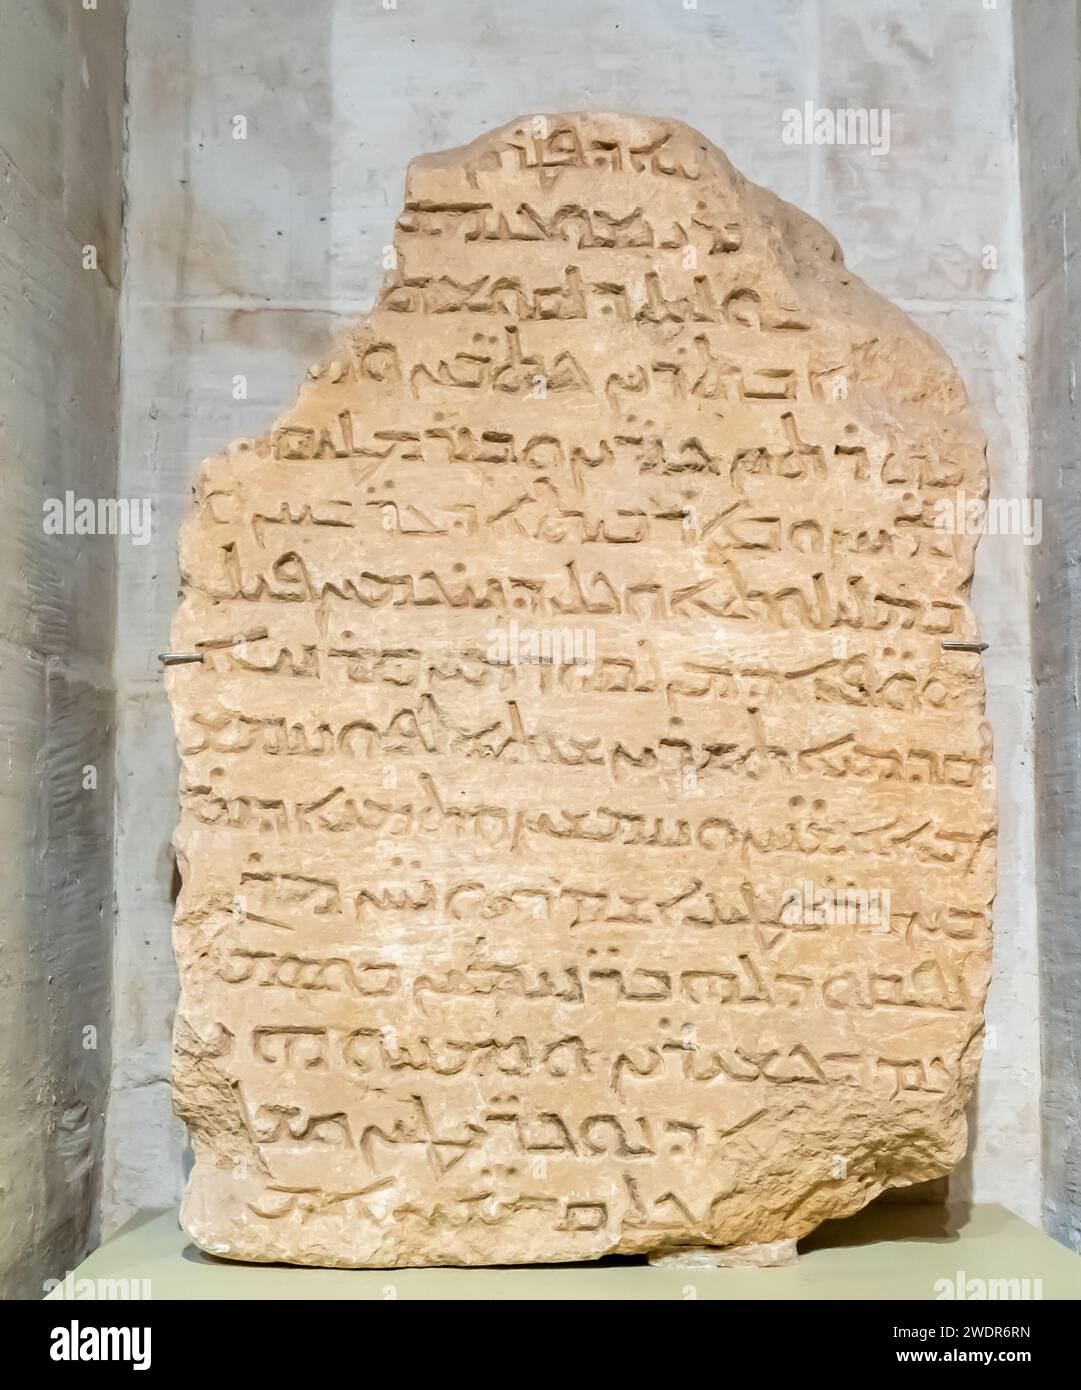 Grabanschrift in syrischer Sprache, Kalkstein, 1246 n. Chr., St. Jakob Kirche, Nusaybin. Stockfoto